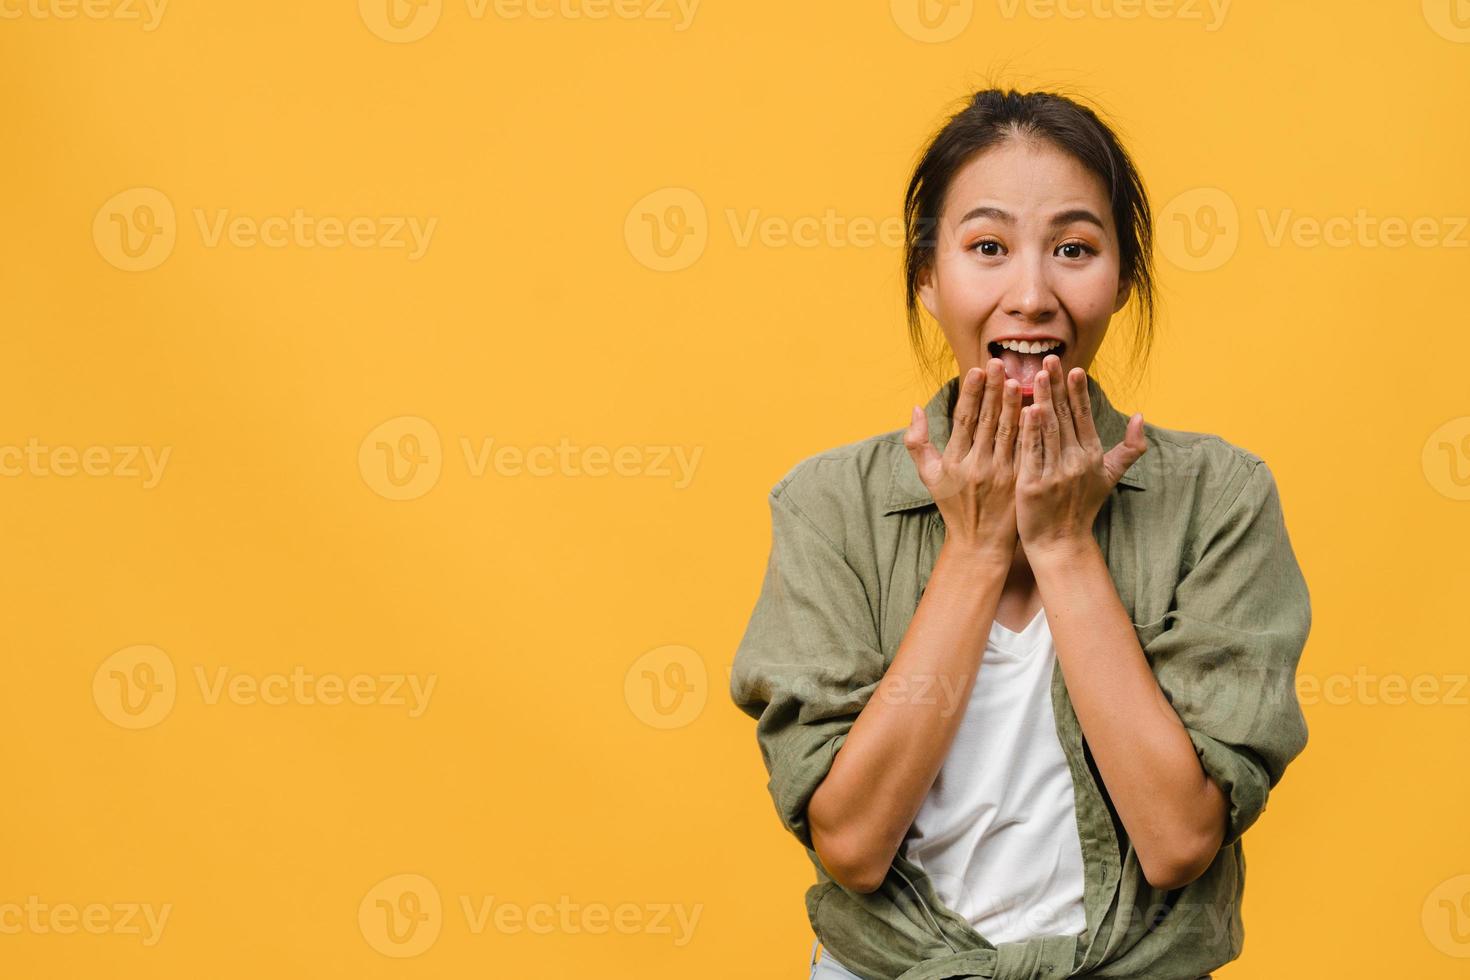 jonge Aziatische dame voelt geluk met positieve uitdrukking, vrolijke verrassing funky, gekleed in casual doek en kijkend naar camera geïsoleerd op gele achtergrond. gelukkige schattige blije vrouw verheugt zich over succes. foto